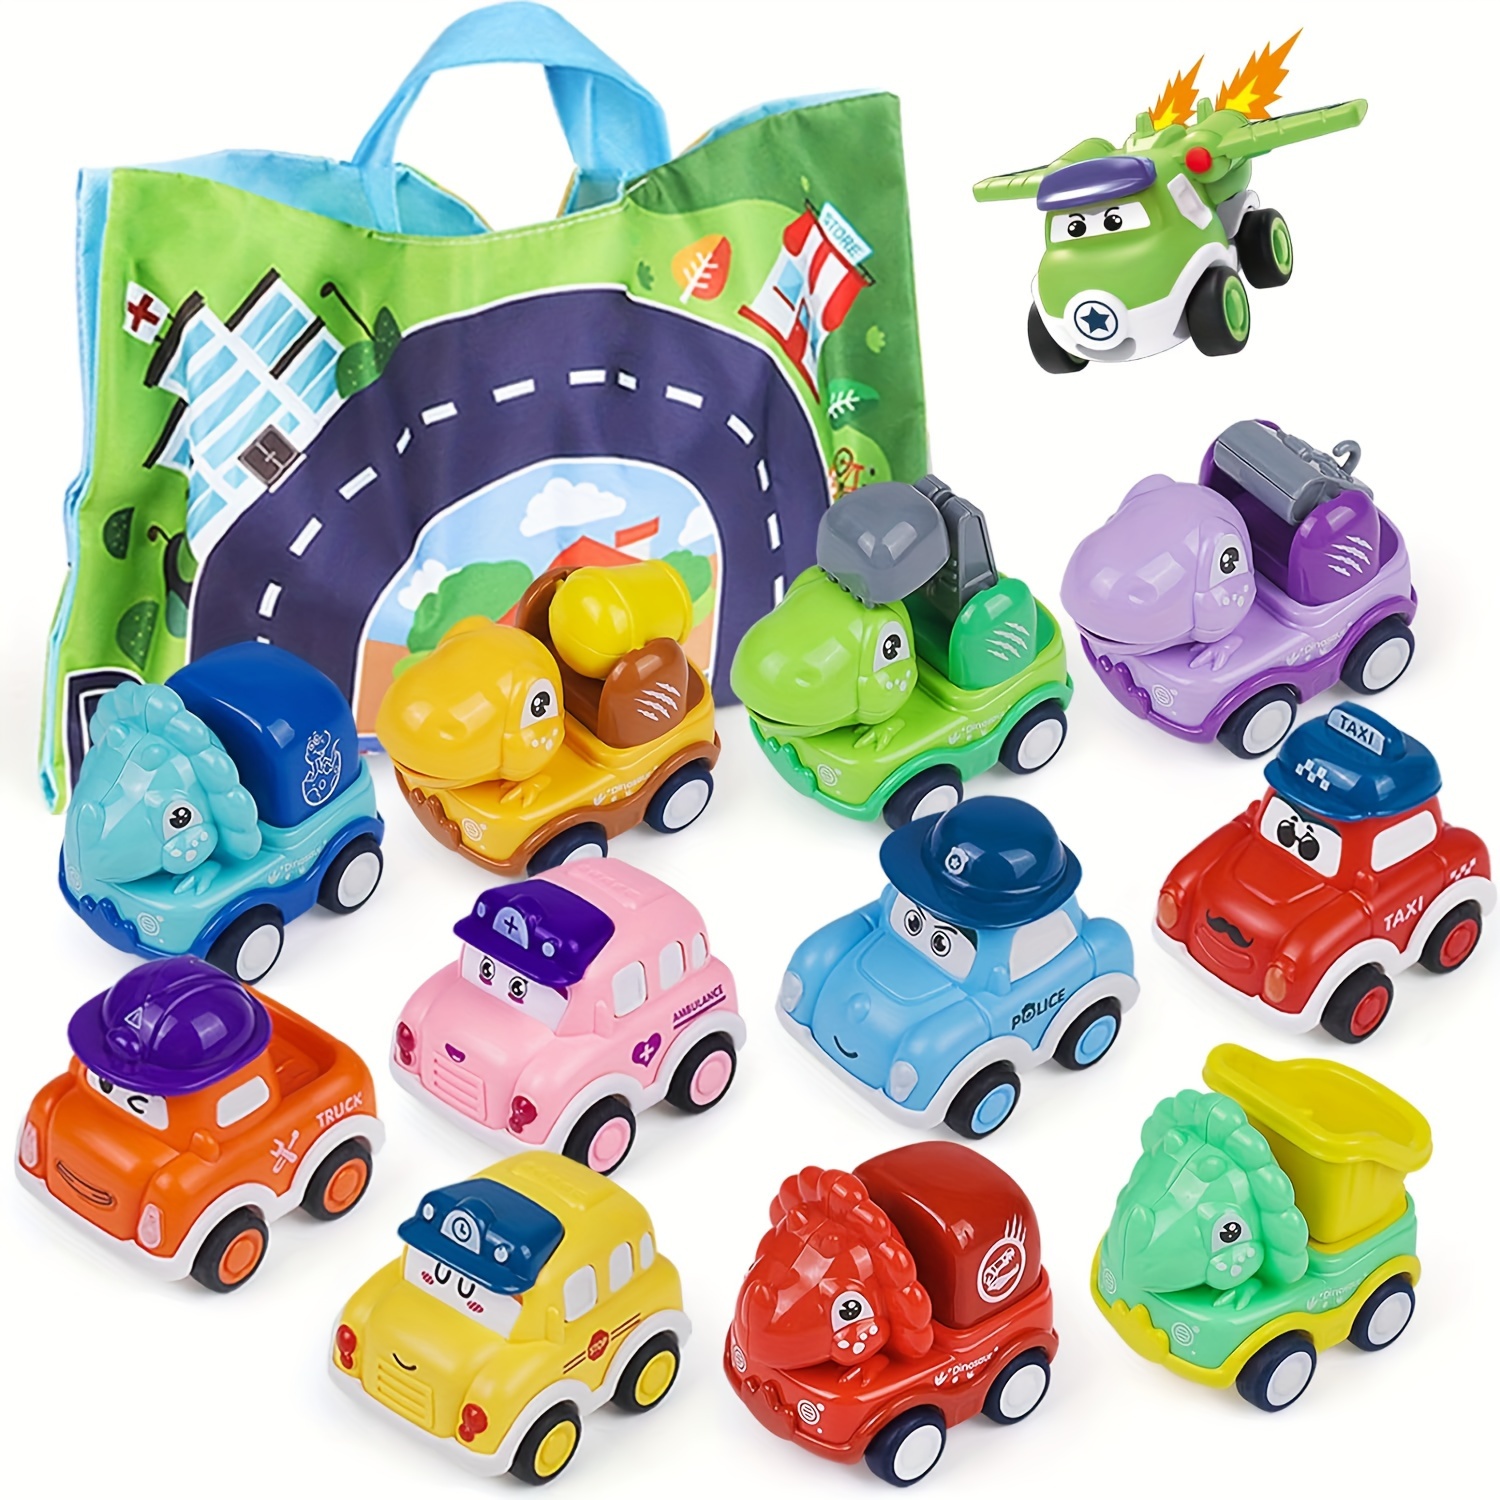  Autos de juguete para niños pequeños, incluye autobús escolar,  tren, avión, barco, taxi, mini automóviles de fricción para niños pequeños,  juguetes de vehículo para niñas de 3, 4 y 5 años